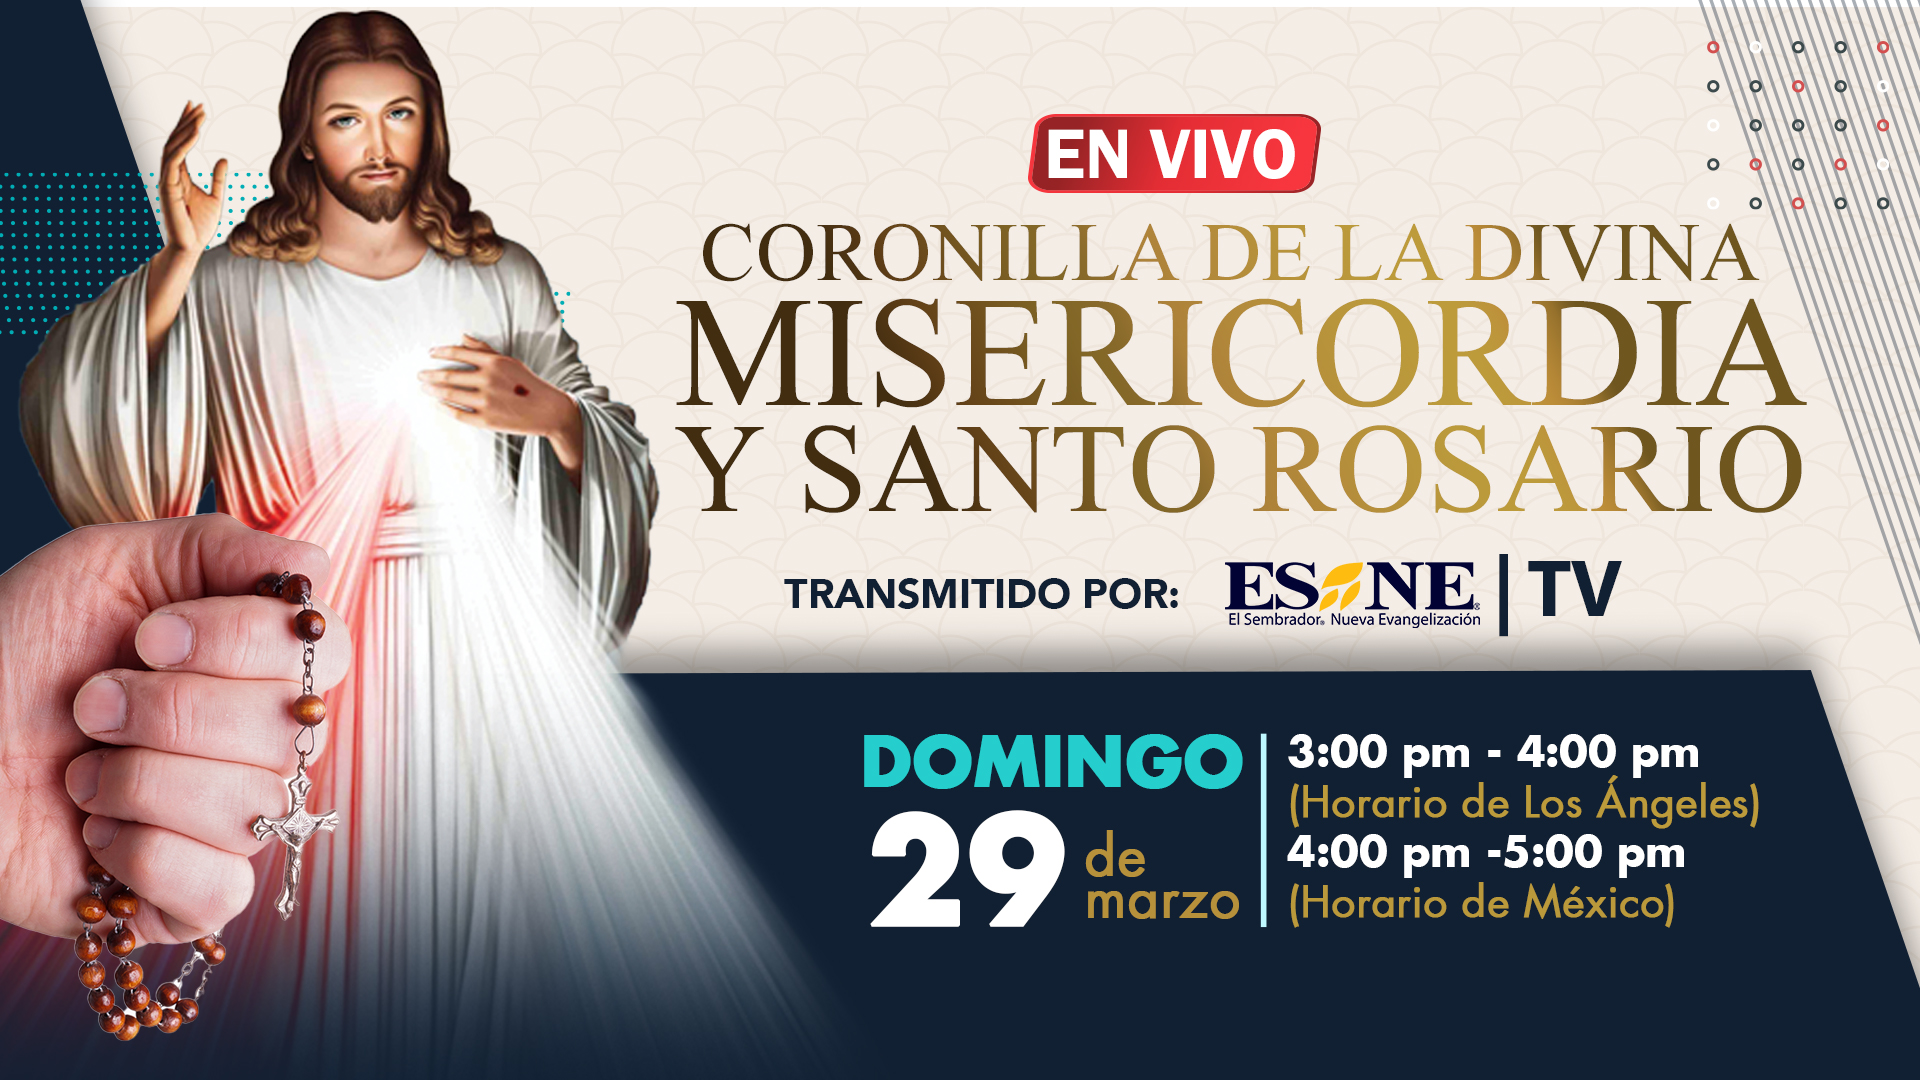 EL SEMBRADOR on Twitter: "Oremos con la Coronilla de la Divina Misericordia  seguida del Santo Rosario. | En vivo desde Esne Tv. #Esnetv #esne  #Coronilla #SantoRosario https://t.co/bRAoEQcGKH" / Twitter